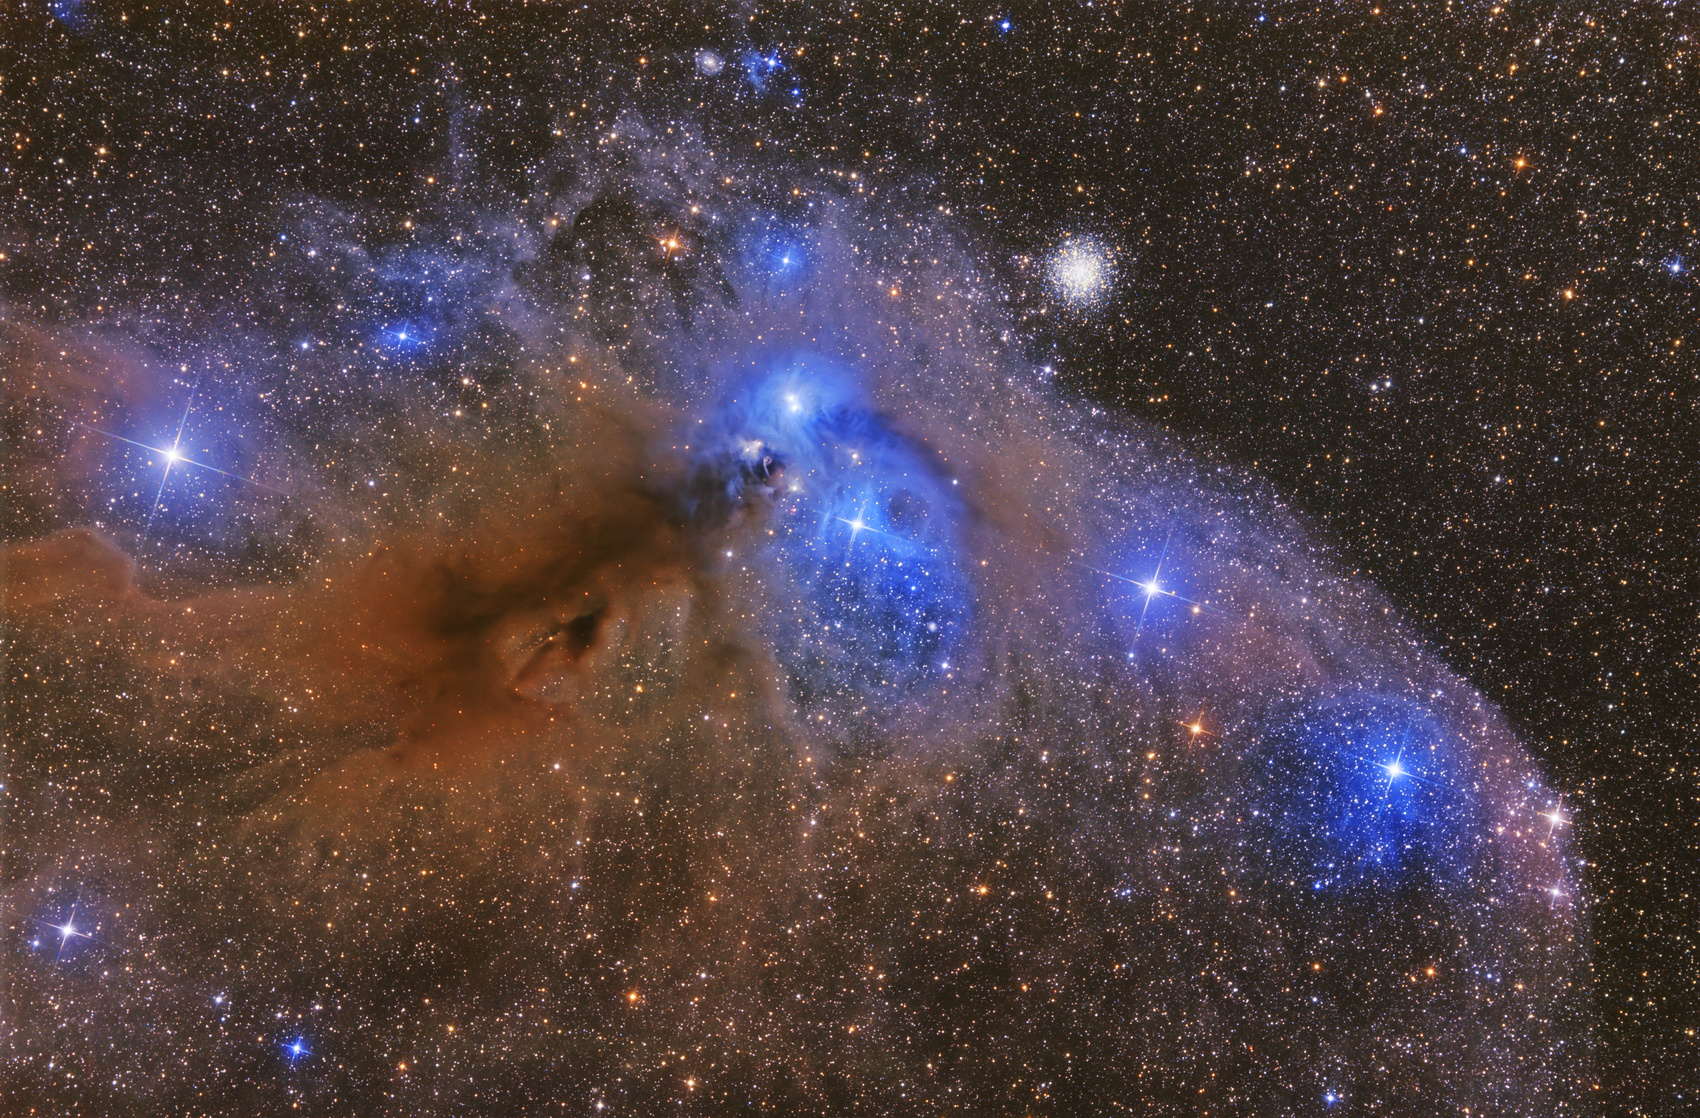 La clé de l'origine de la vie se trouve-t-elle dans les poussières interstellaires ? Ici, NGC 6726, une nébuleuse par réflexion qui se situe à environ 500 années-lumière dans la constellation de la Couronne australe. Elle fait partie d'un ensemble complexe d'objets célestes. NGC 6726 est un grand nuage de gaz constitué d'une fine poussière qui renvoie la lumière des étoiles proches. © Artem, Fotolia 